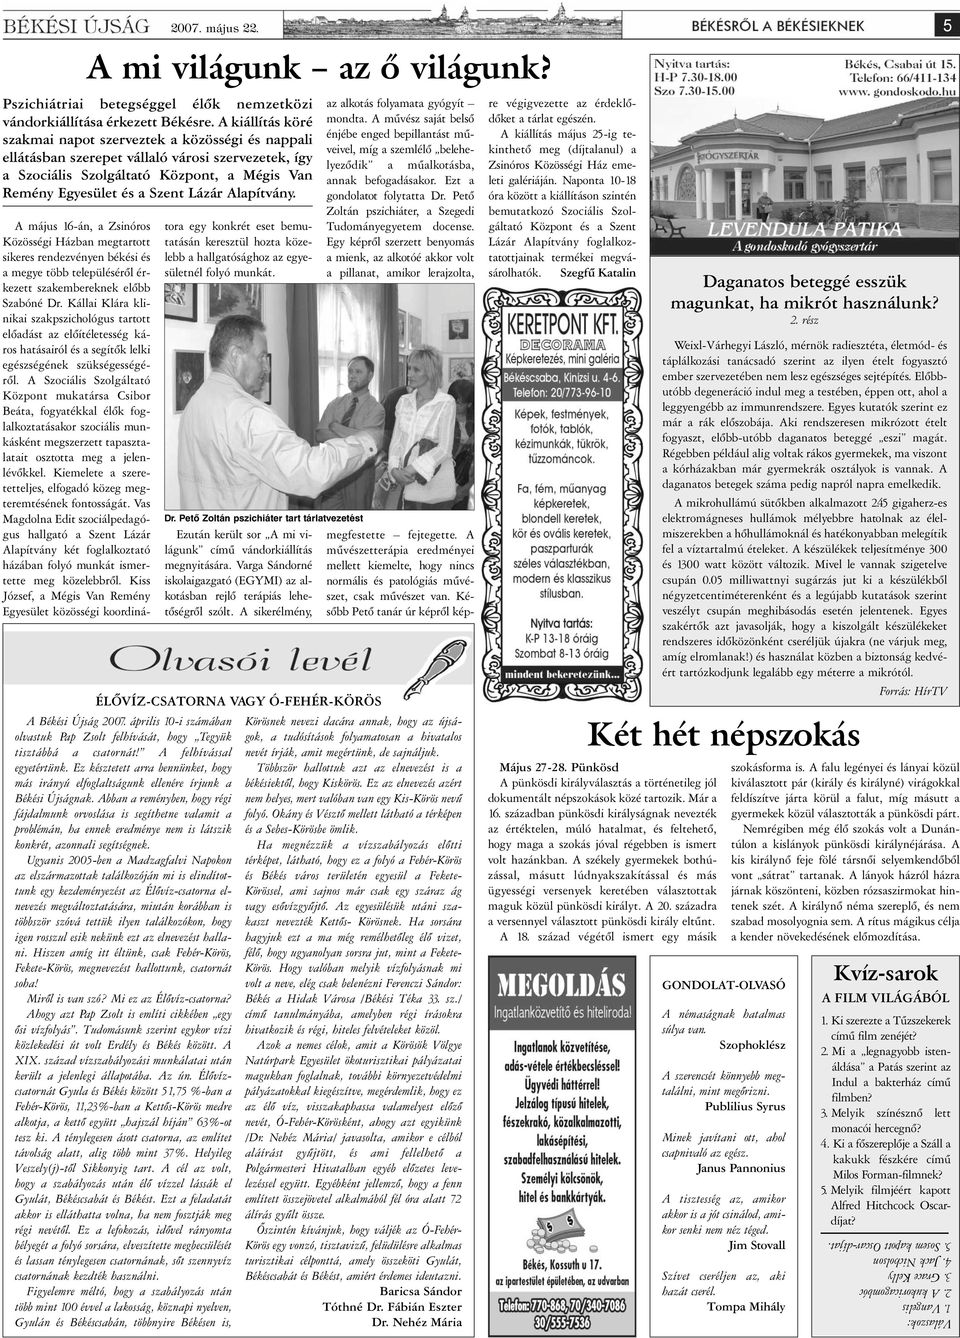 Alapítvány. A ékési Újság 2007. április 0-i számában olvastuk Pap Zsolt felhívását, hogy Tegyük tisztábbá a csatornát! A felhívással egyetértünk.